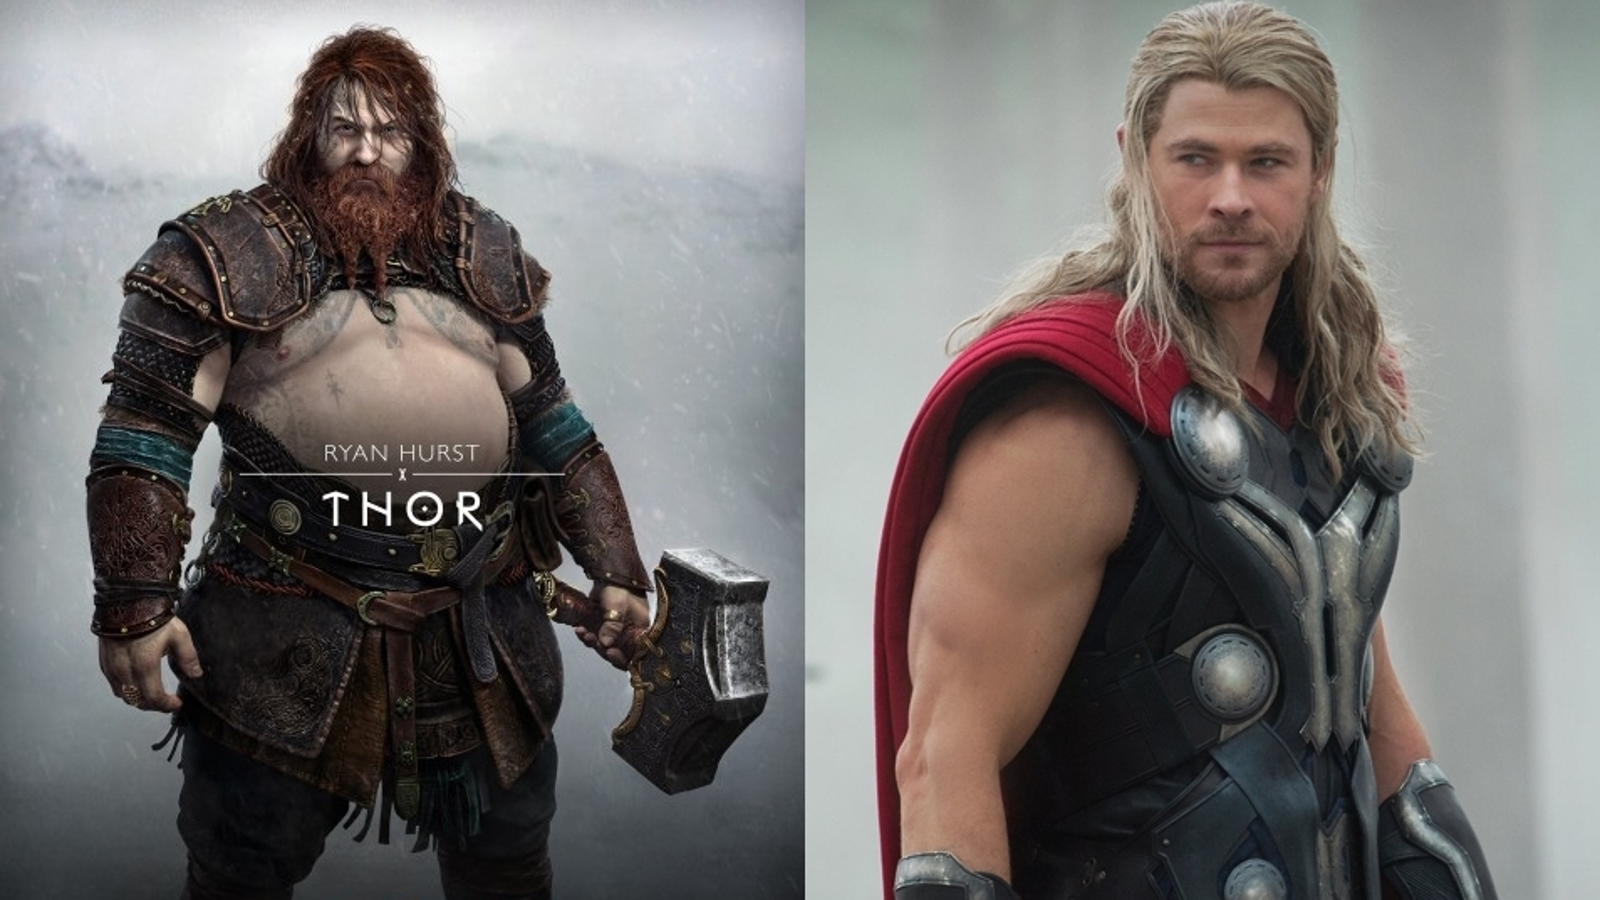 Opinião - God of War: Ragnarok acerta no visual de Thor. Por Pedro